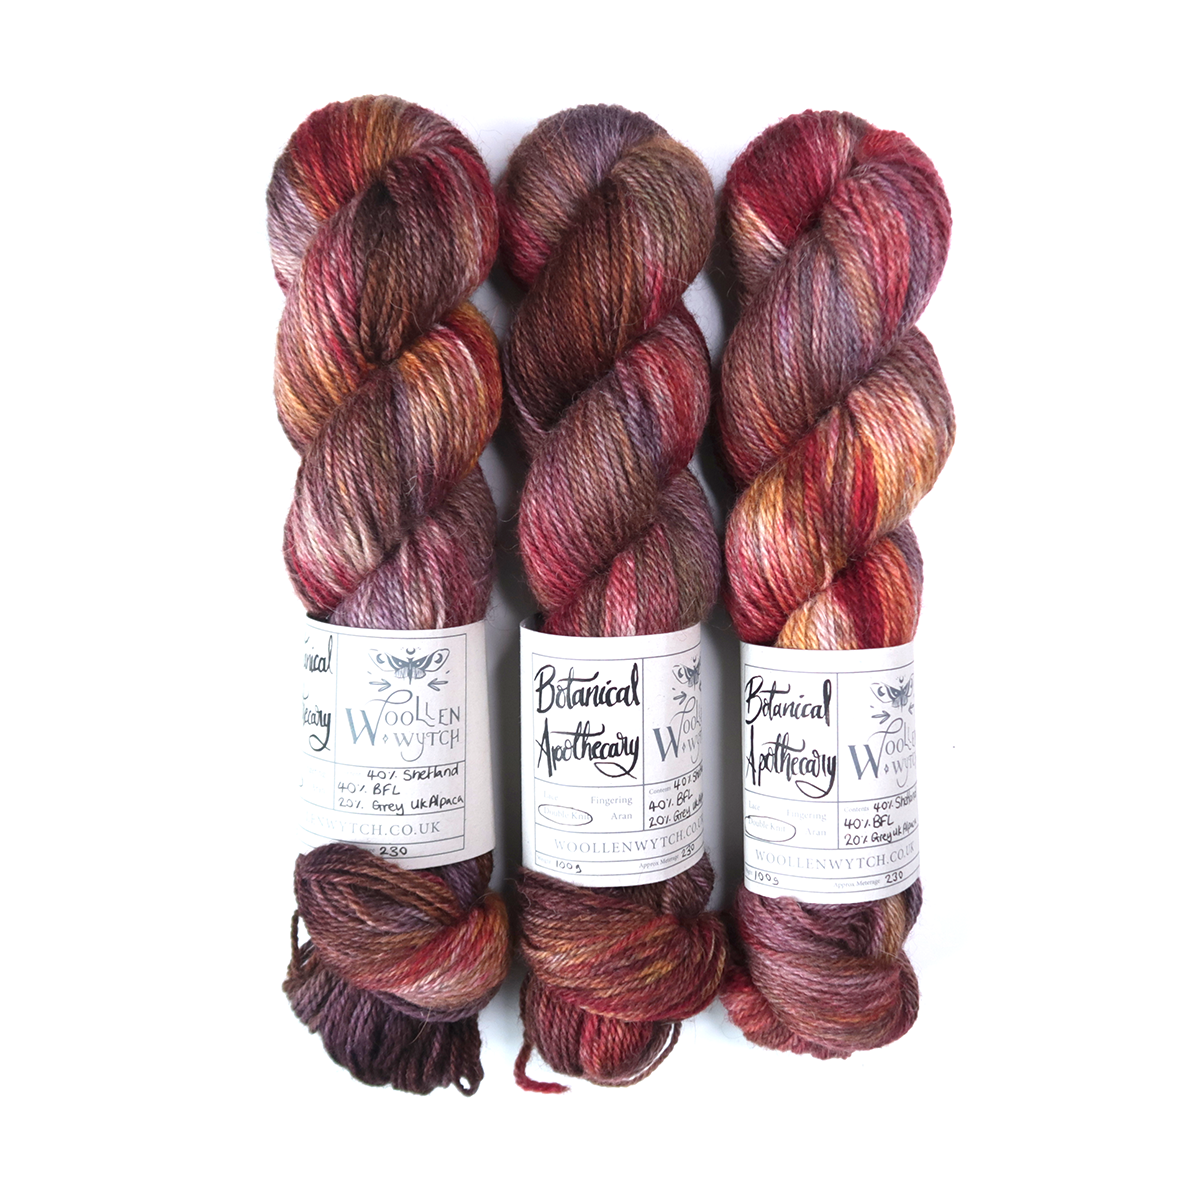 Hand dyed shetland yarn british wool botanical apothecary woollen wytch